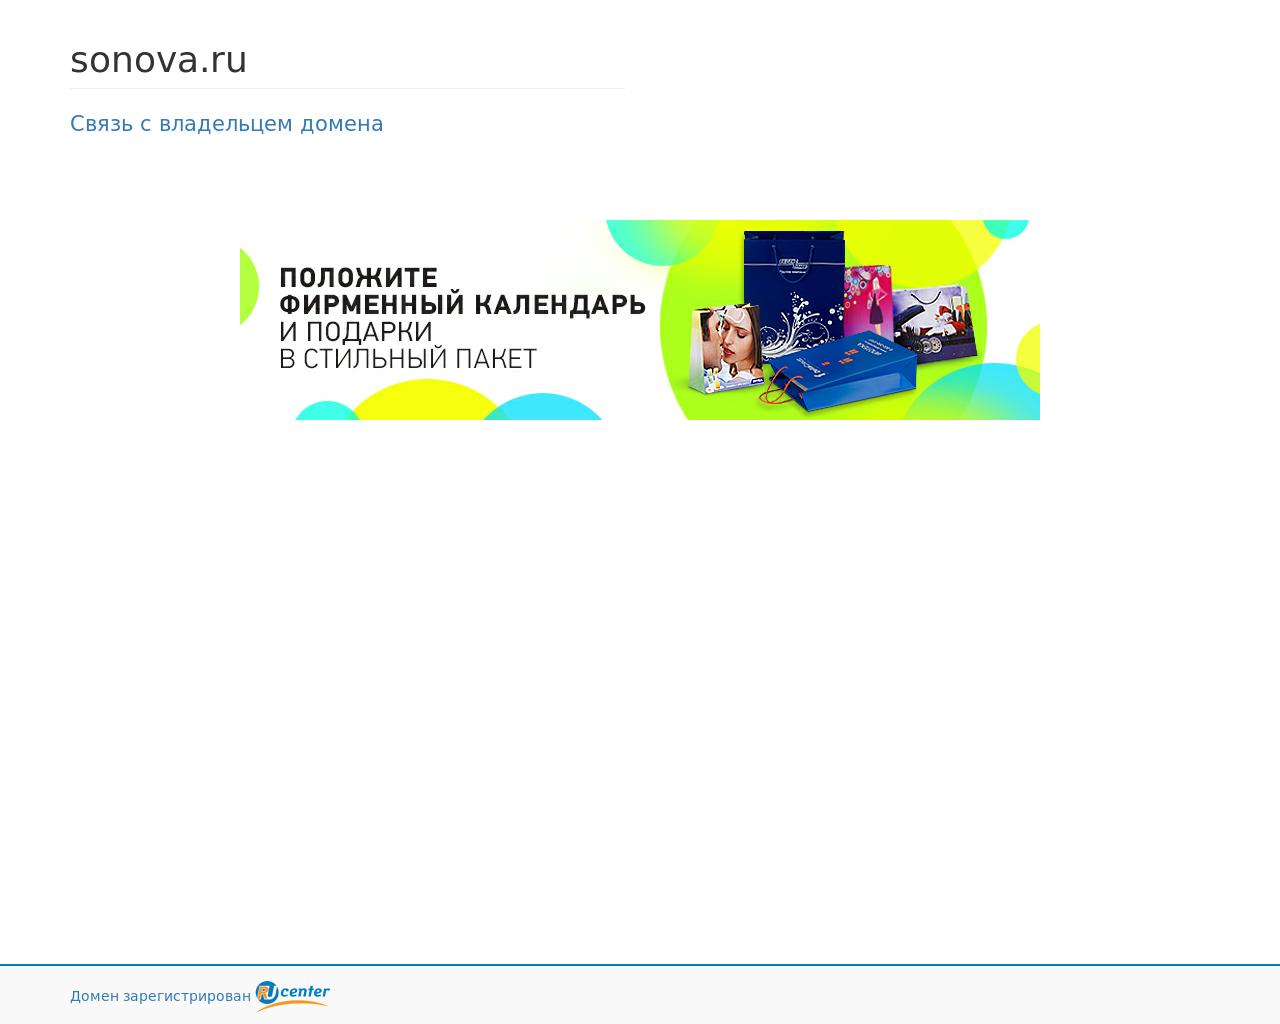 Изображение сайта sonova.ru в разрешении 1280x1024